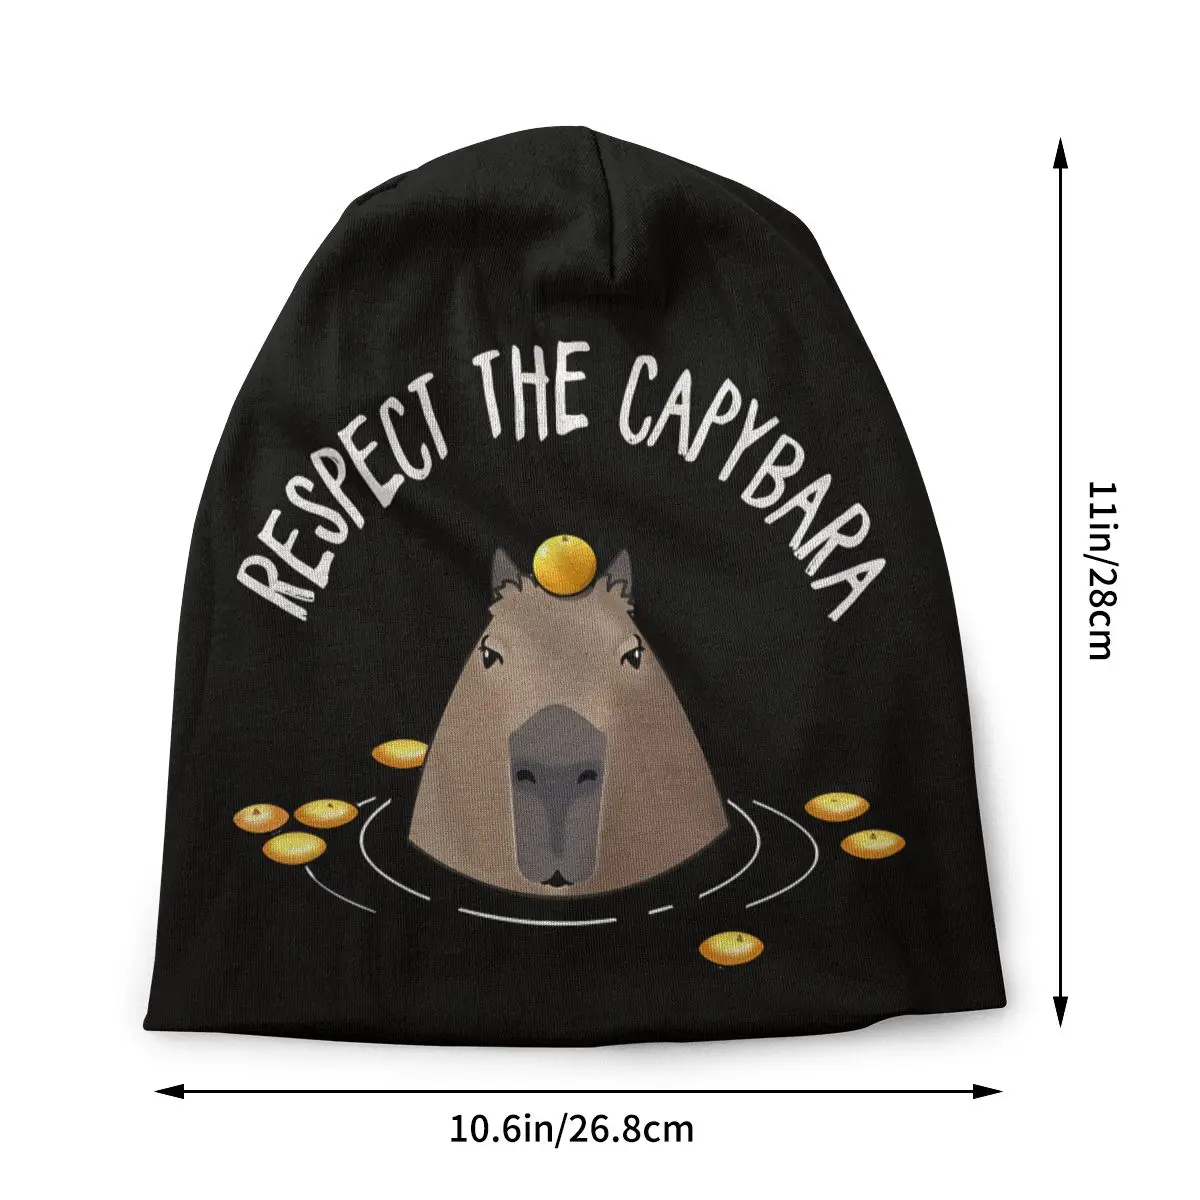 Respect Capybara Unisex Bonnet Thin Cycling Skullies Beanies For Men Women